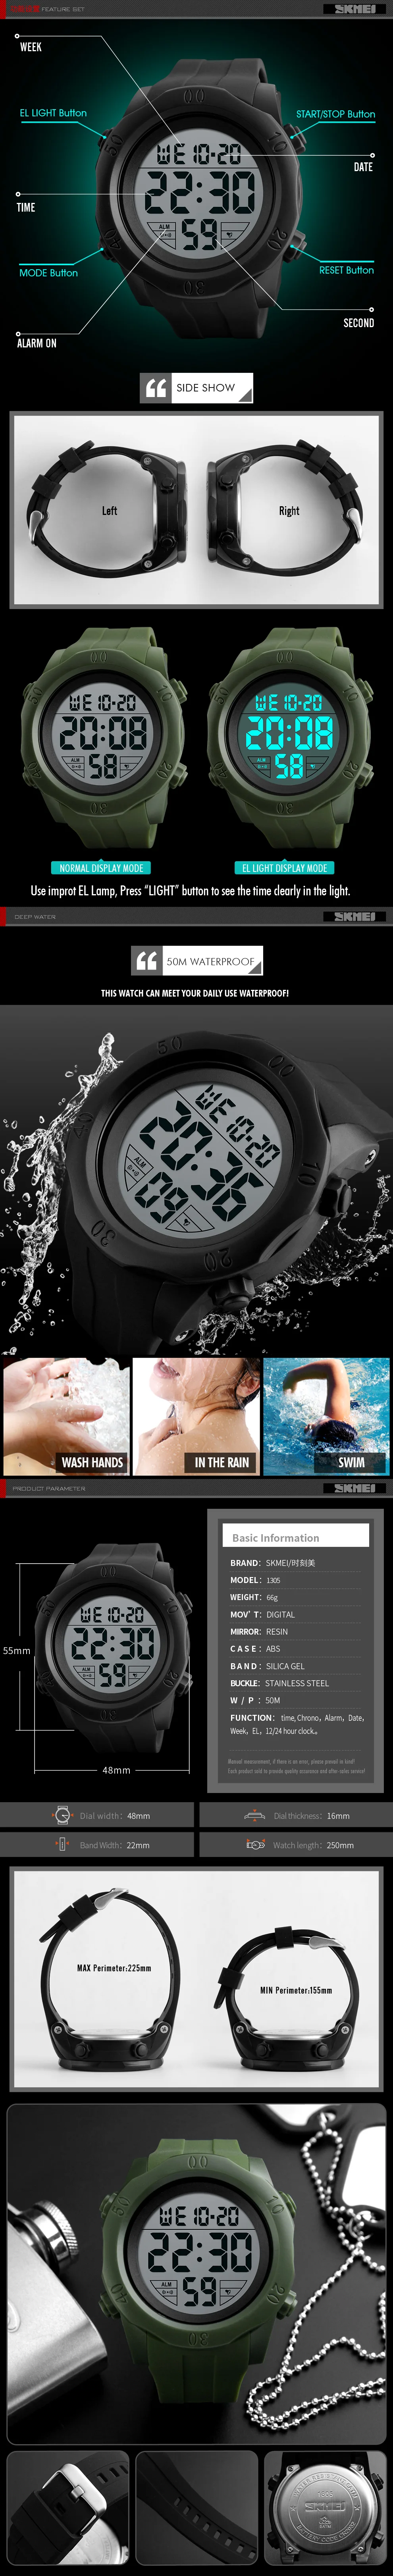 SKMEI простые спортивные часы мужские 5 бар водонепроницаемые часы будильник на неделю часы Chrono PU ремешок цифровые наручные часы Relogio Masculino 1305